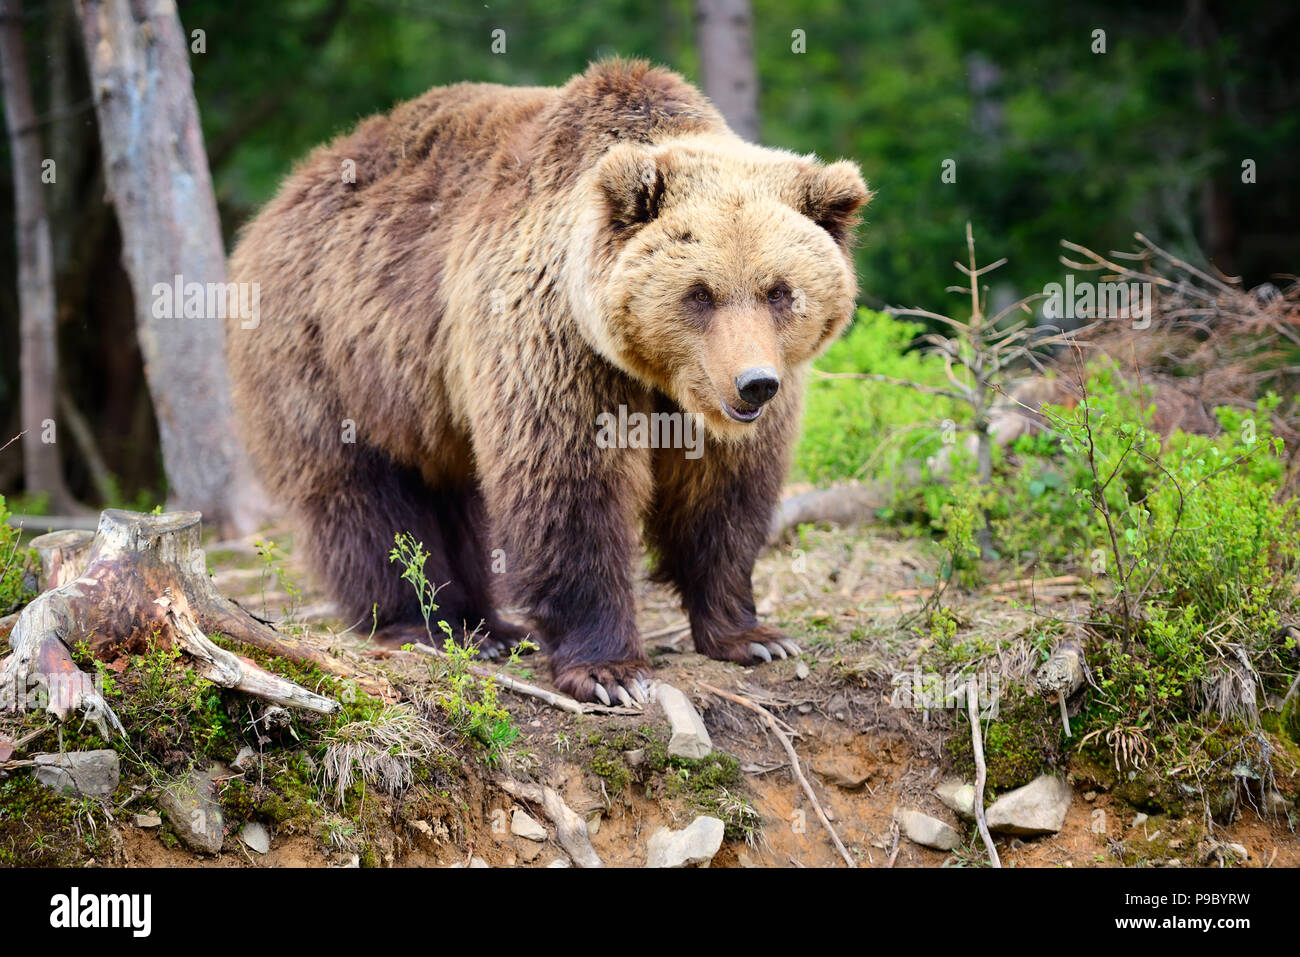 Europäische Braunbären in einem Wald Landschaft im Sommer. Großer brauner Bär im Wald. Stockfoto